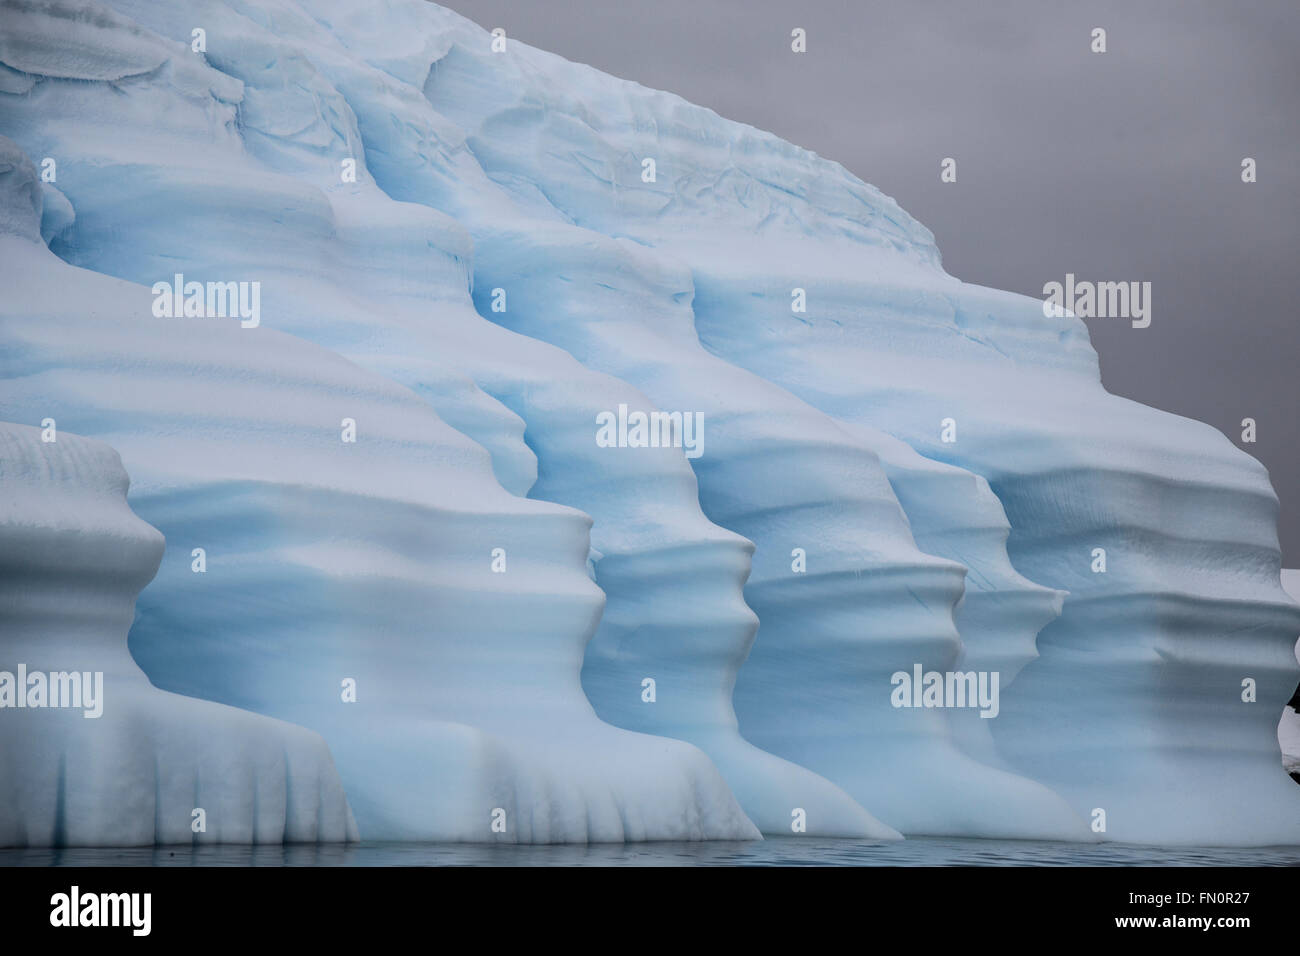 L'antarctique, péninsule antarctique, détail d'un grand iceberg bleu près de l'Île Detaille Banque D'Images